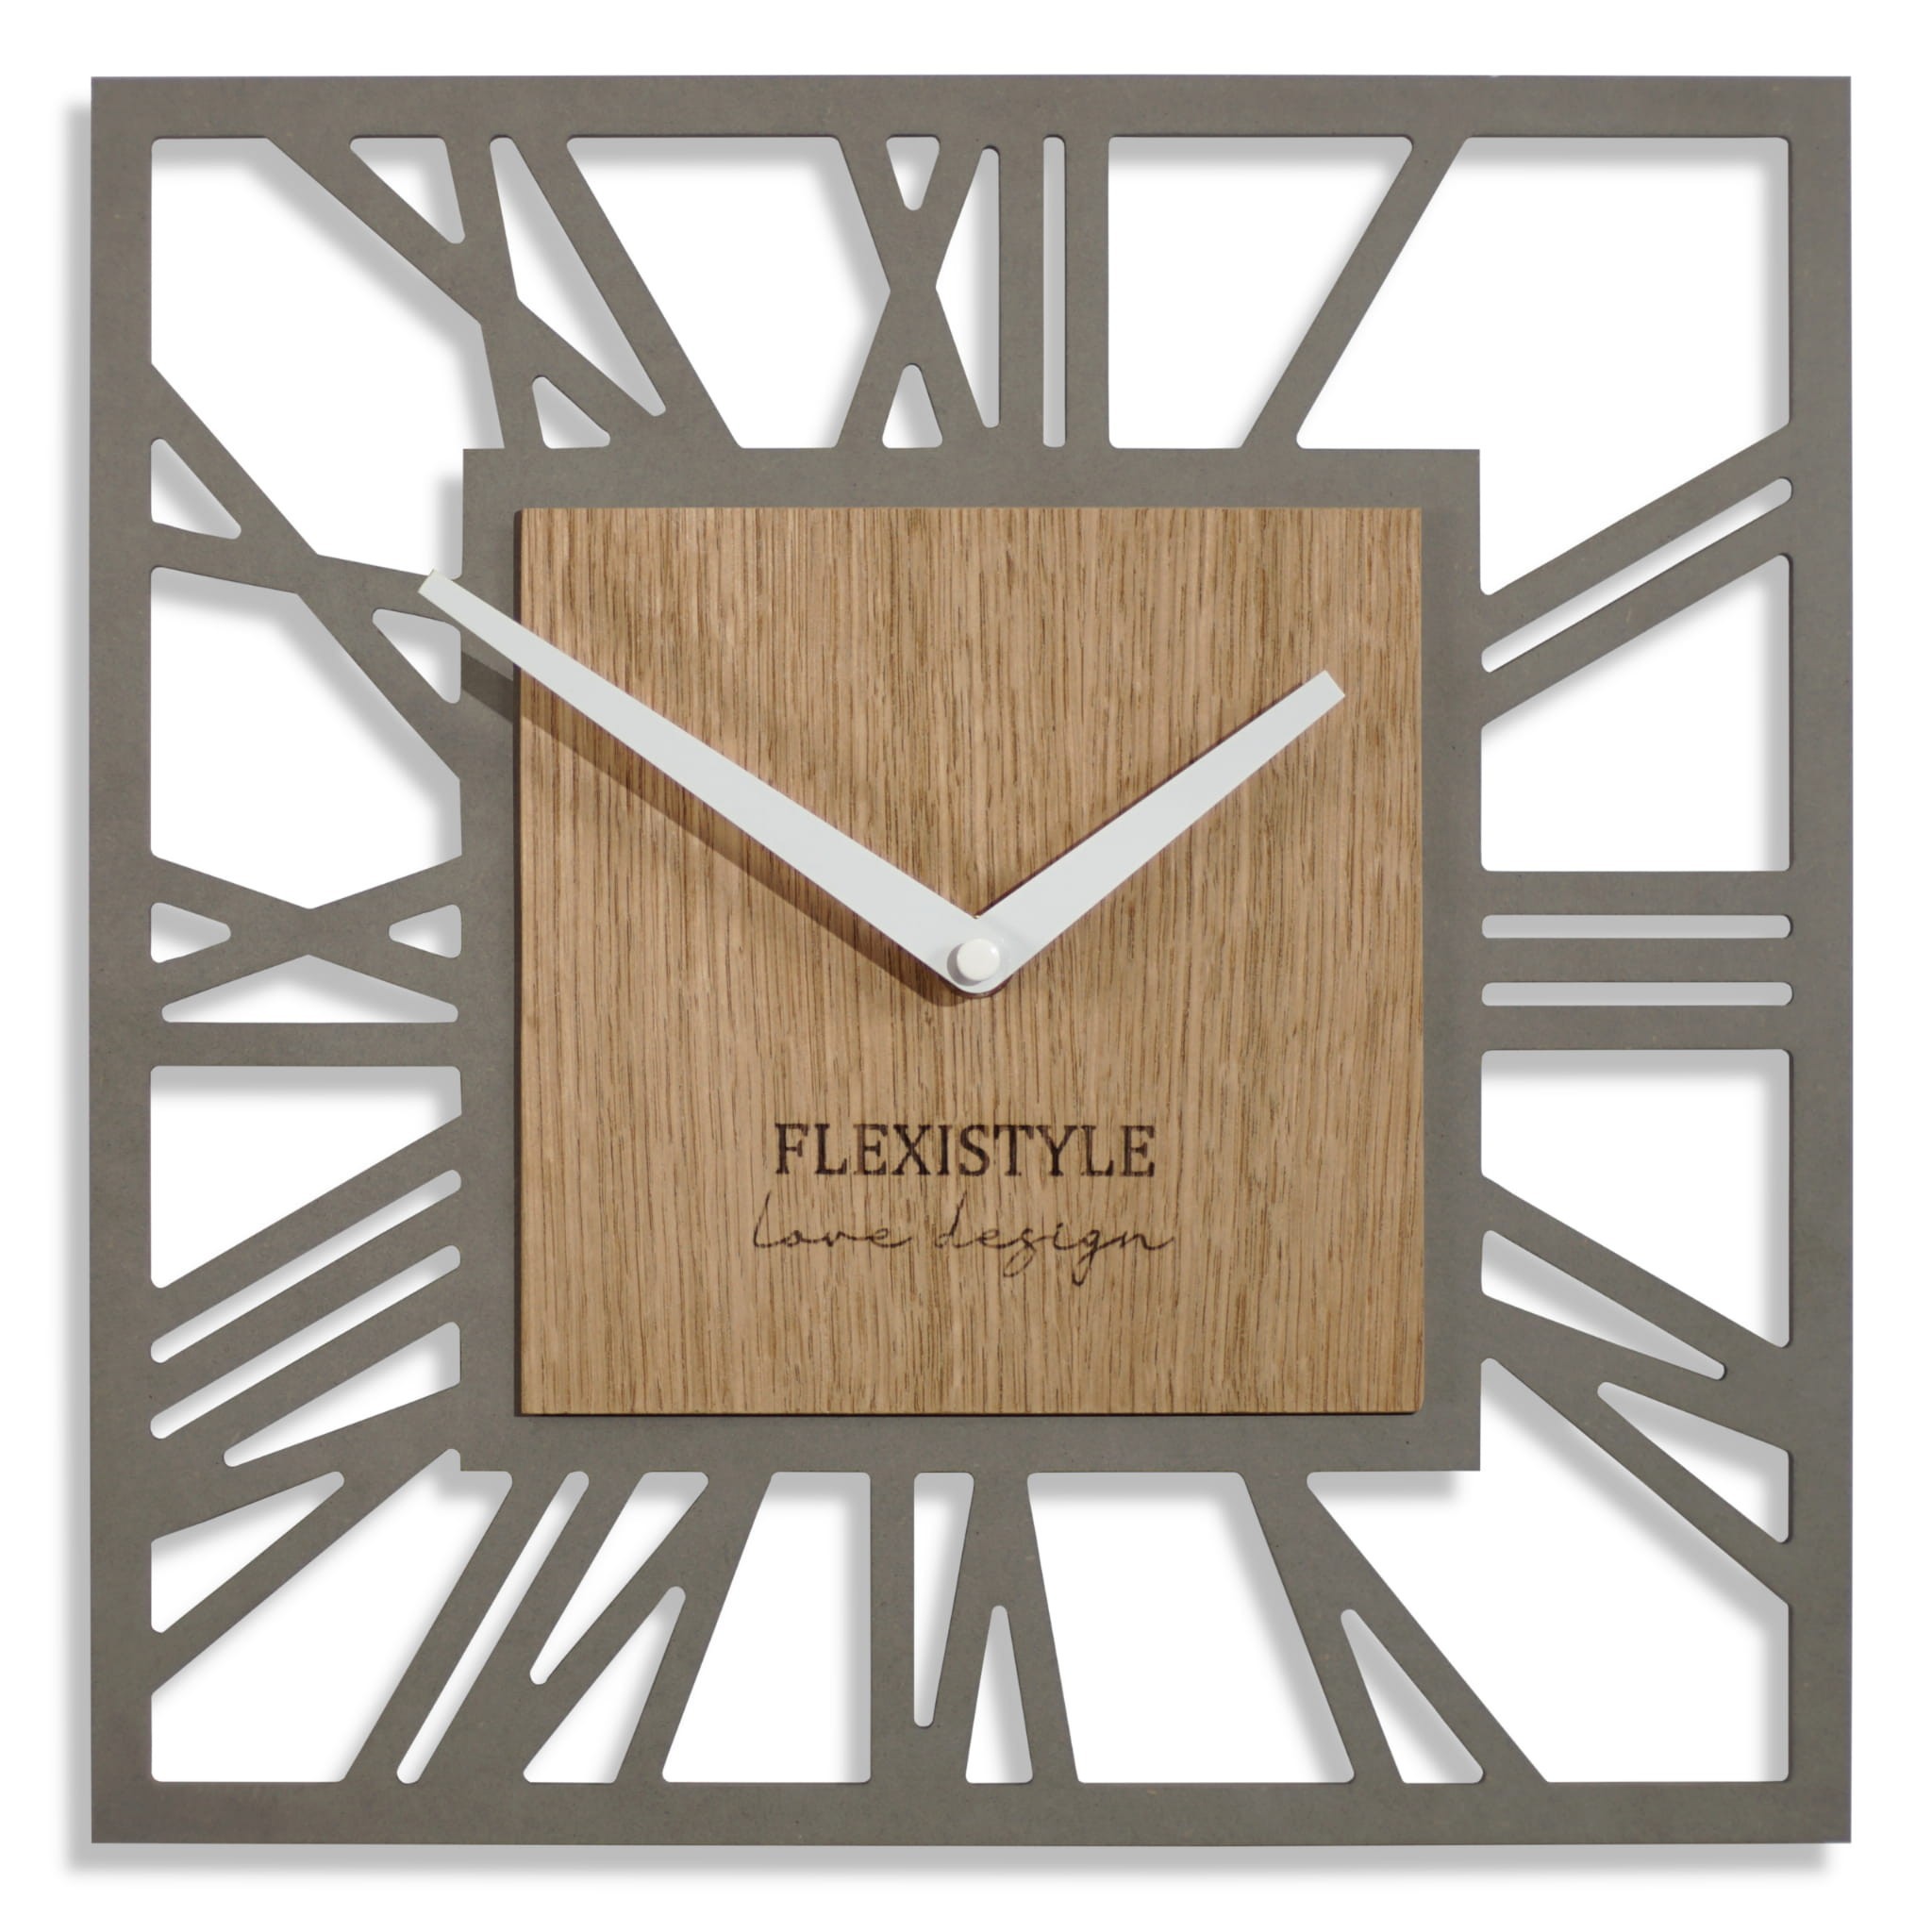 Dřevěné nástěnné hodiny ve tvaru čtverce v šedé barvě